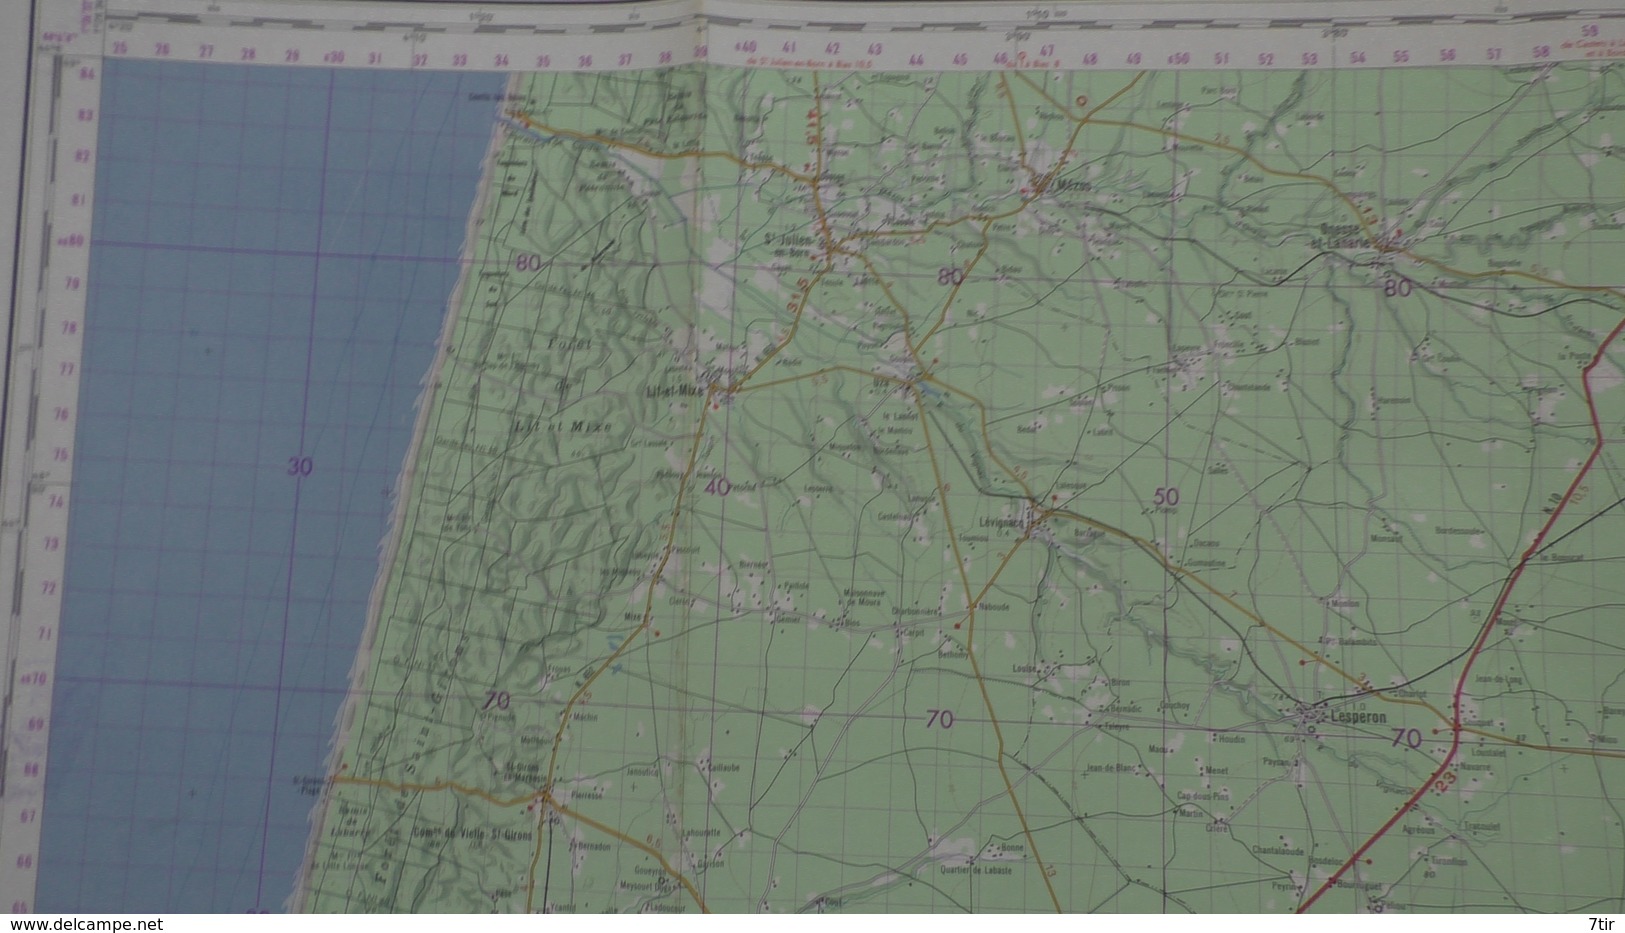 SOUSTON LIT ET MIXE LEON LINXE CASTETS MAGESCQ LESPERONMORCENX ARJUZANX RIOM DES LANDES TRTAS BEGAAR - Geographical Maps